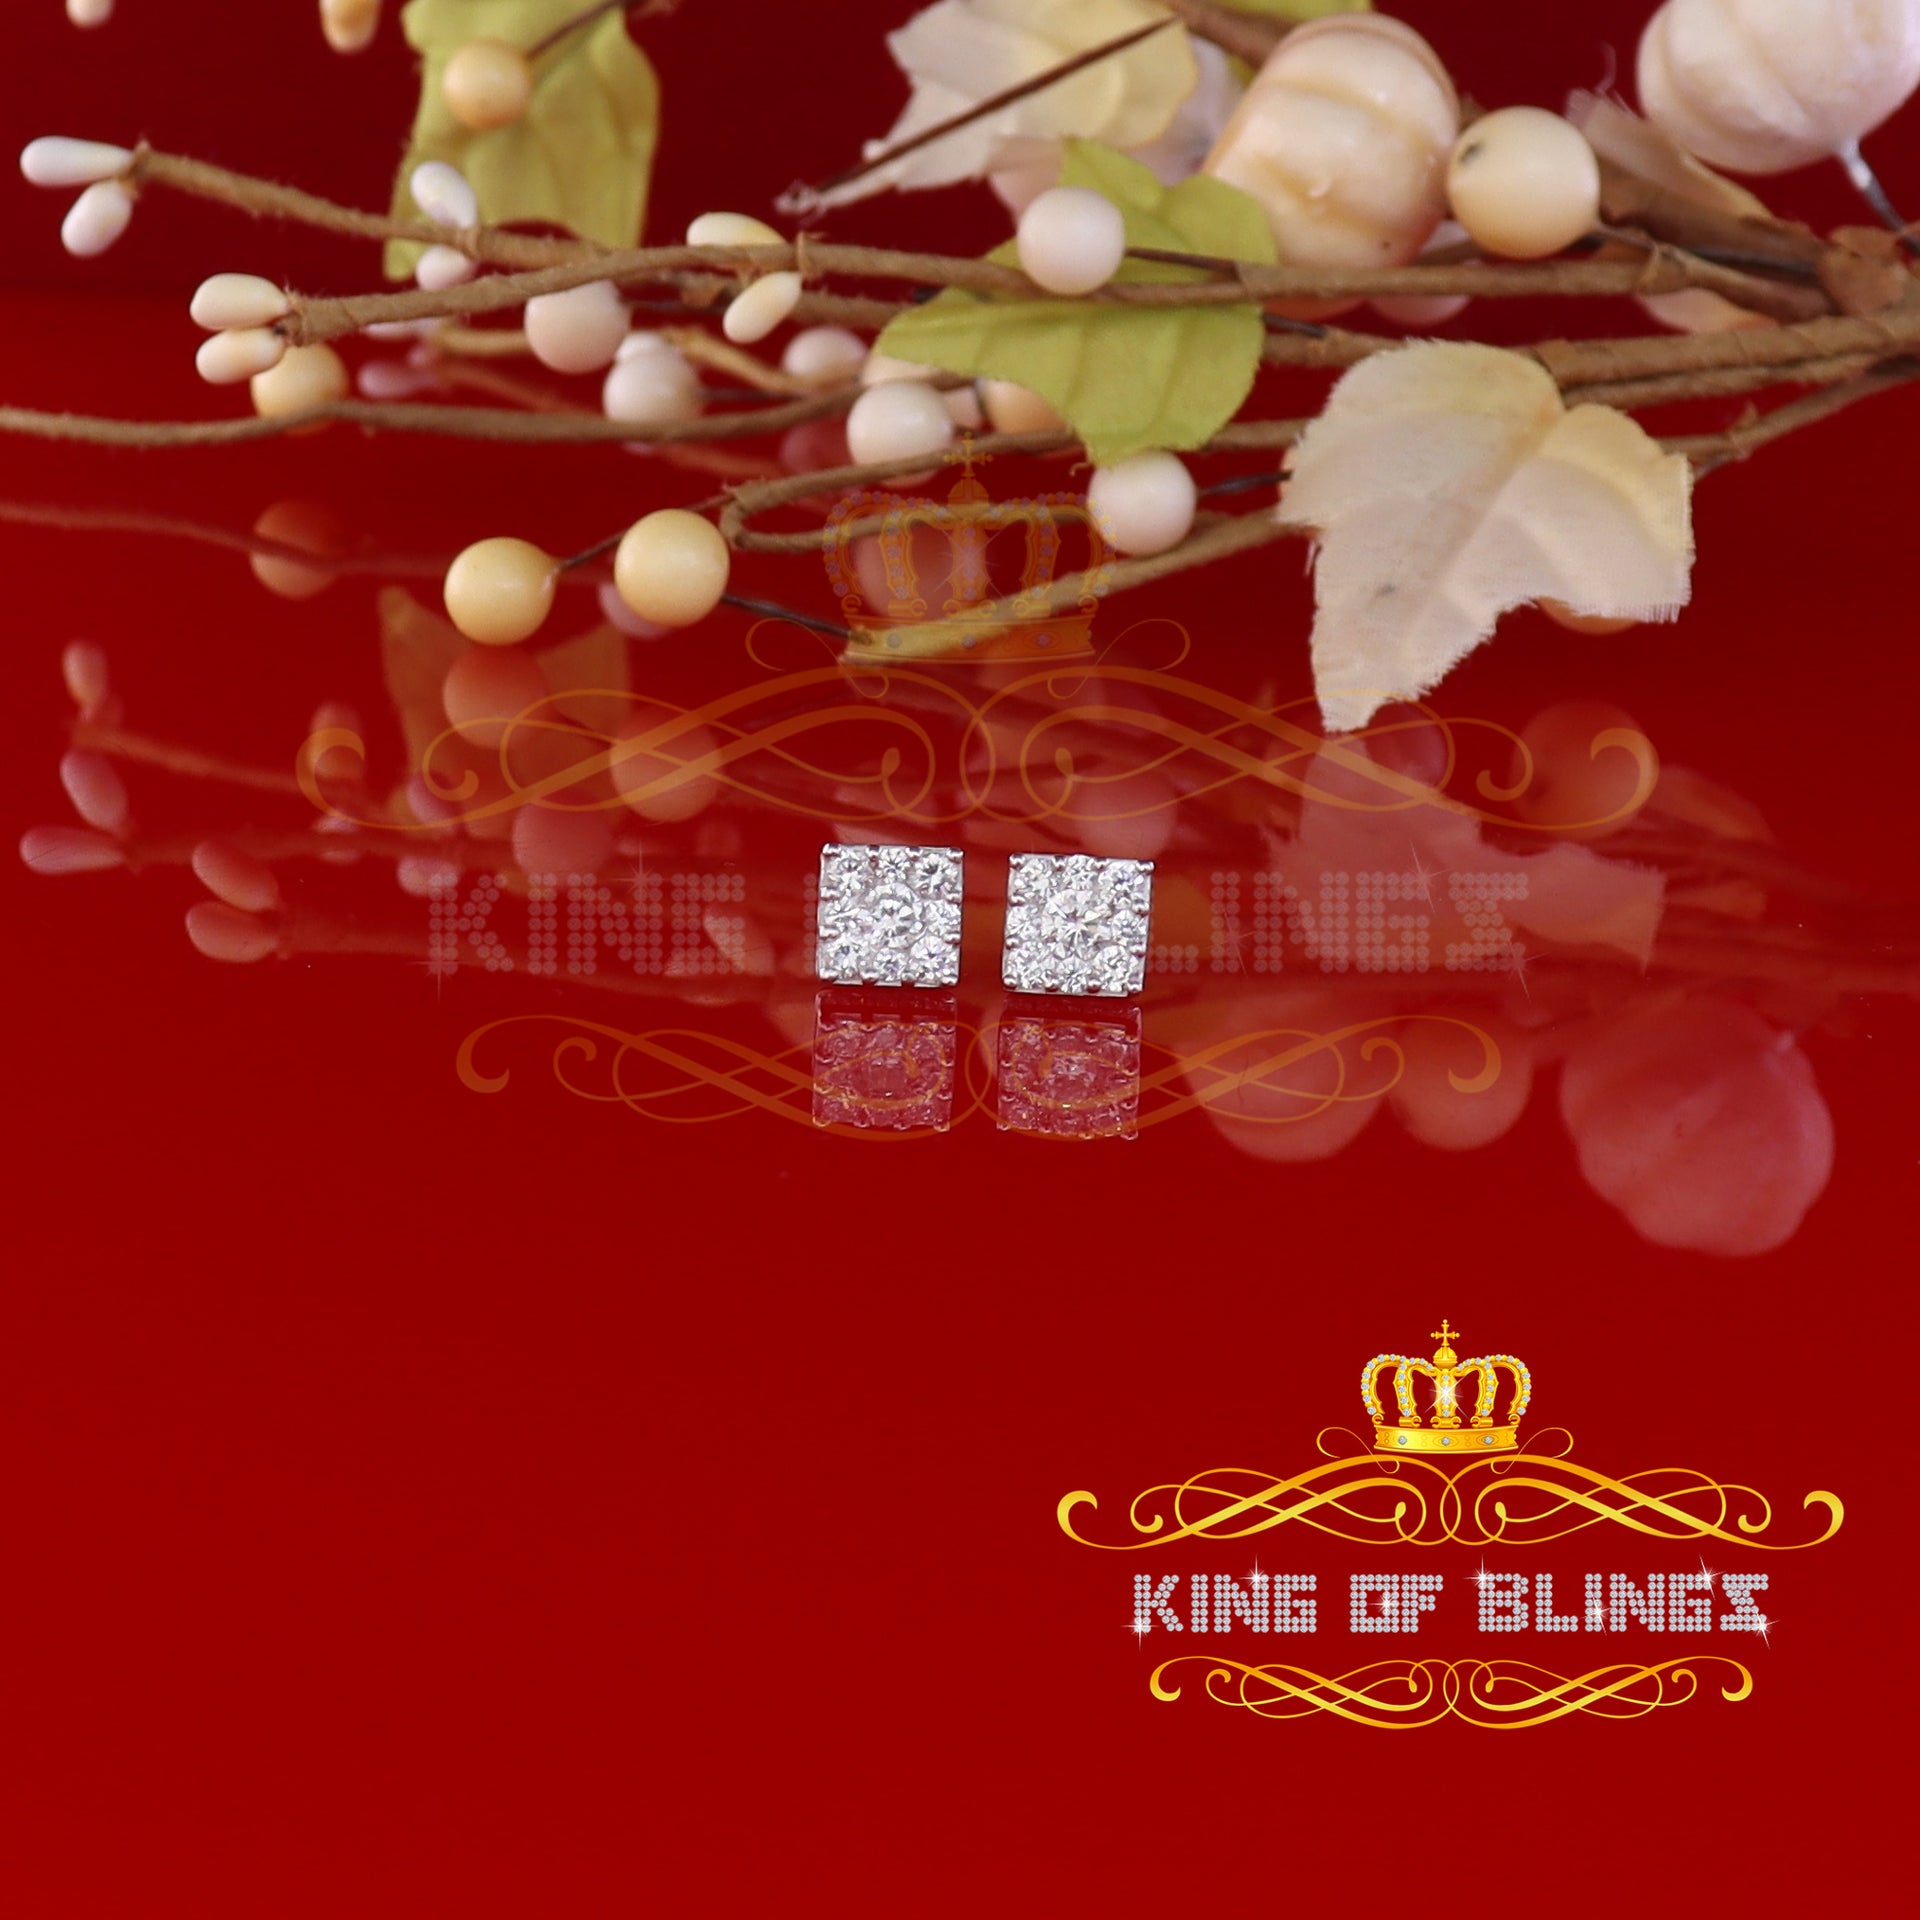 King of Blings- 925 White 1.46ct Sterling Silver Cubic Zirconia Women's & Men's Square Earrings KING OF BLINGS